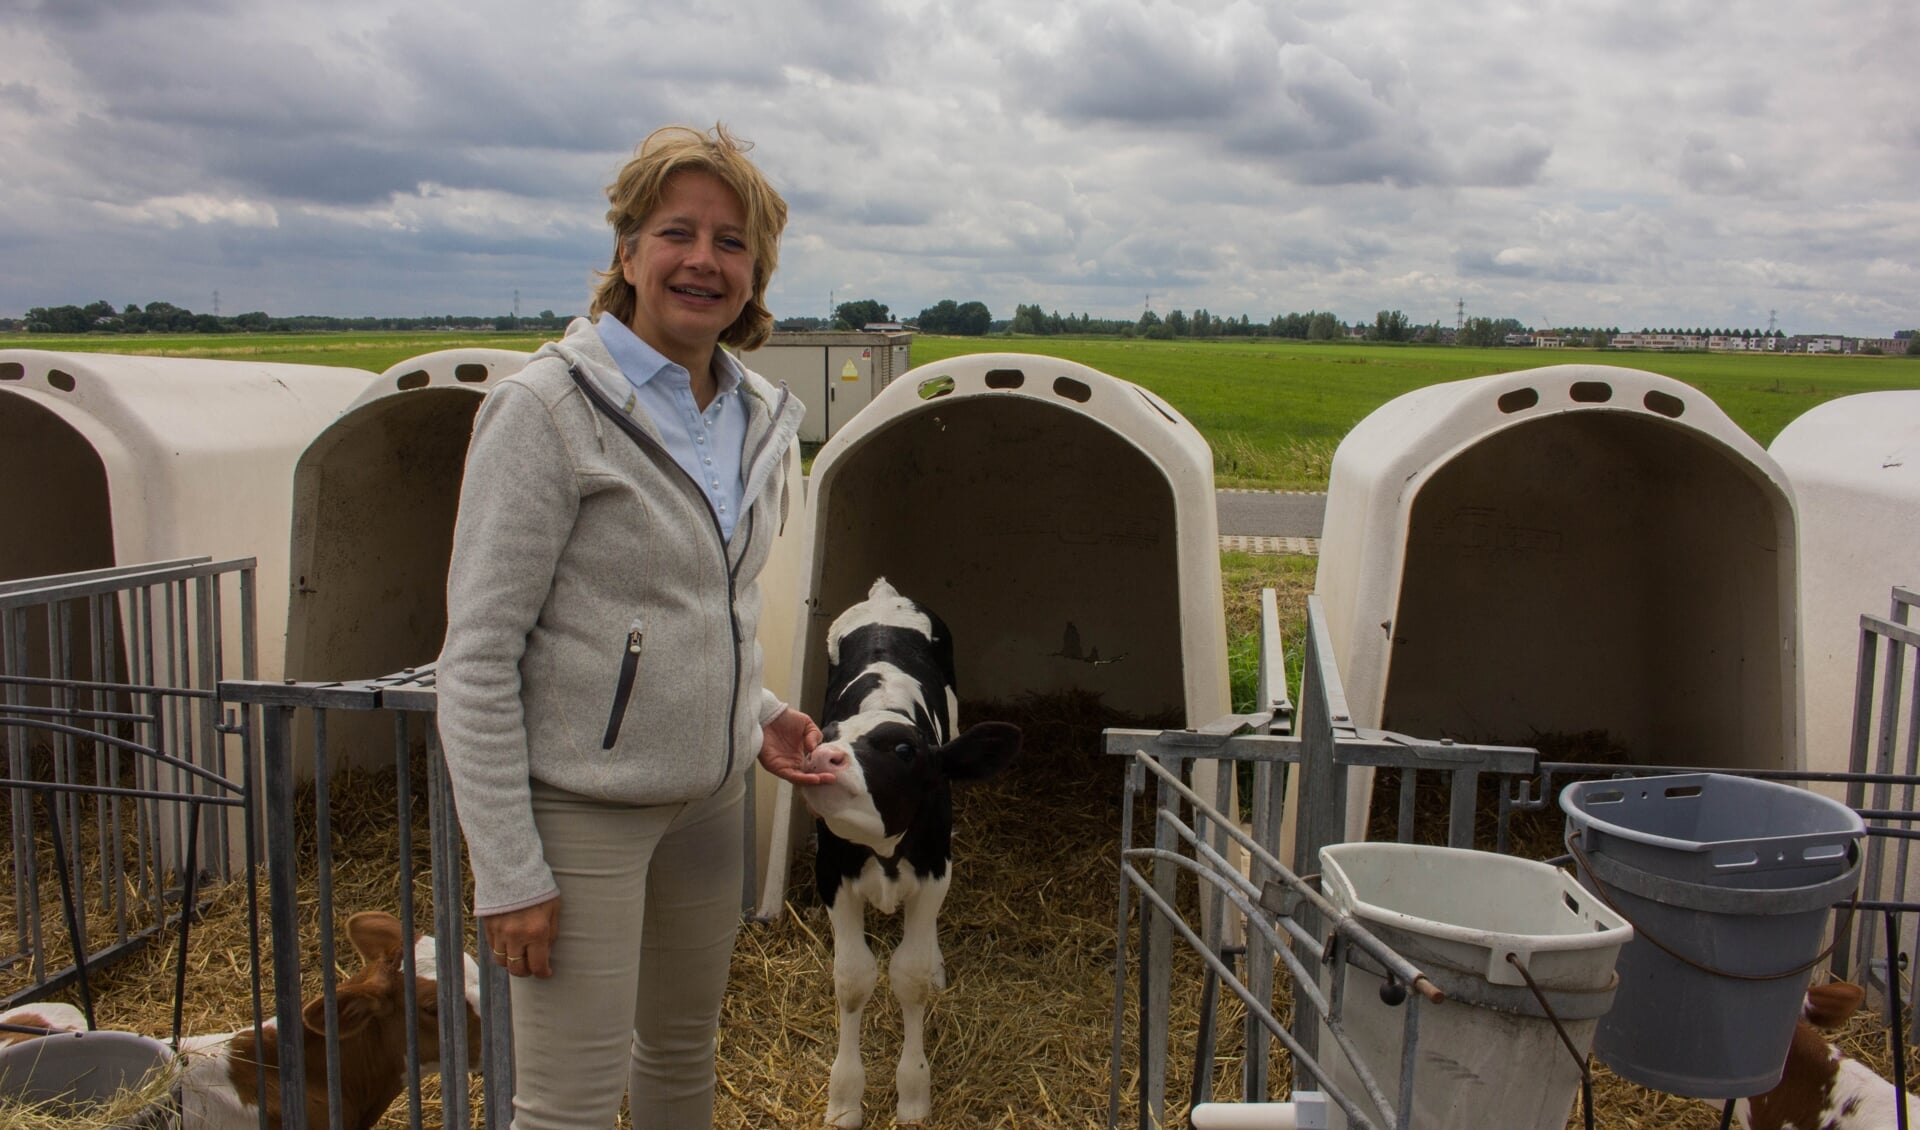 Ingrid van Zwambagt heeft samen met haar man een melkveebedrijf. Zoals bij veel andere boeren, hebben de stikstofmaatregelen ook op hen veel impact. "Het voelt onmenselijk en er komen veel emoties bij kijken."